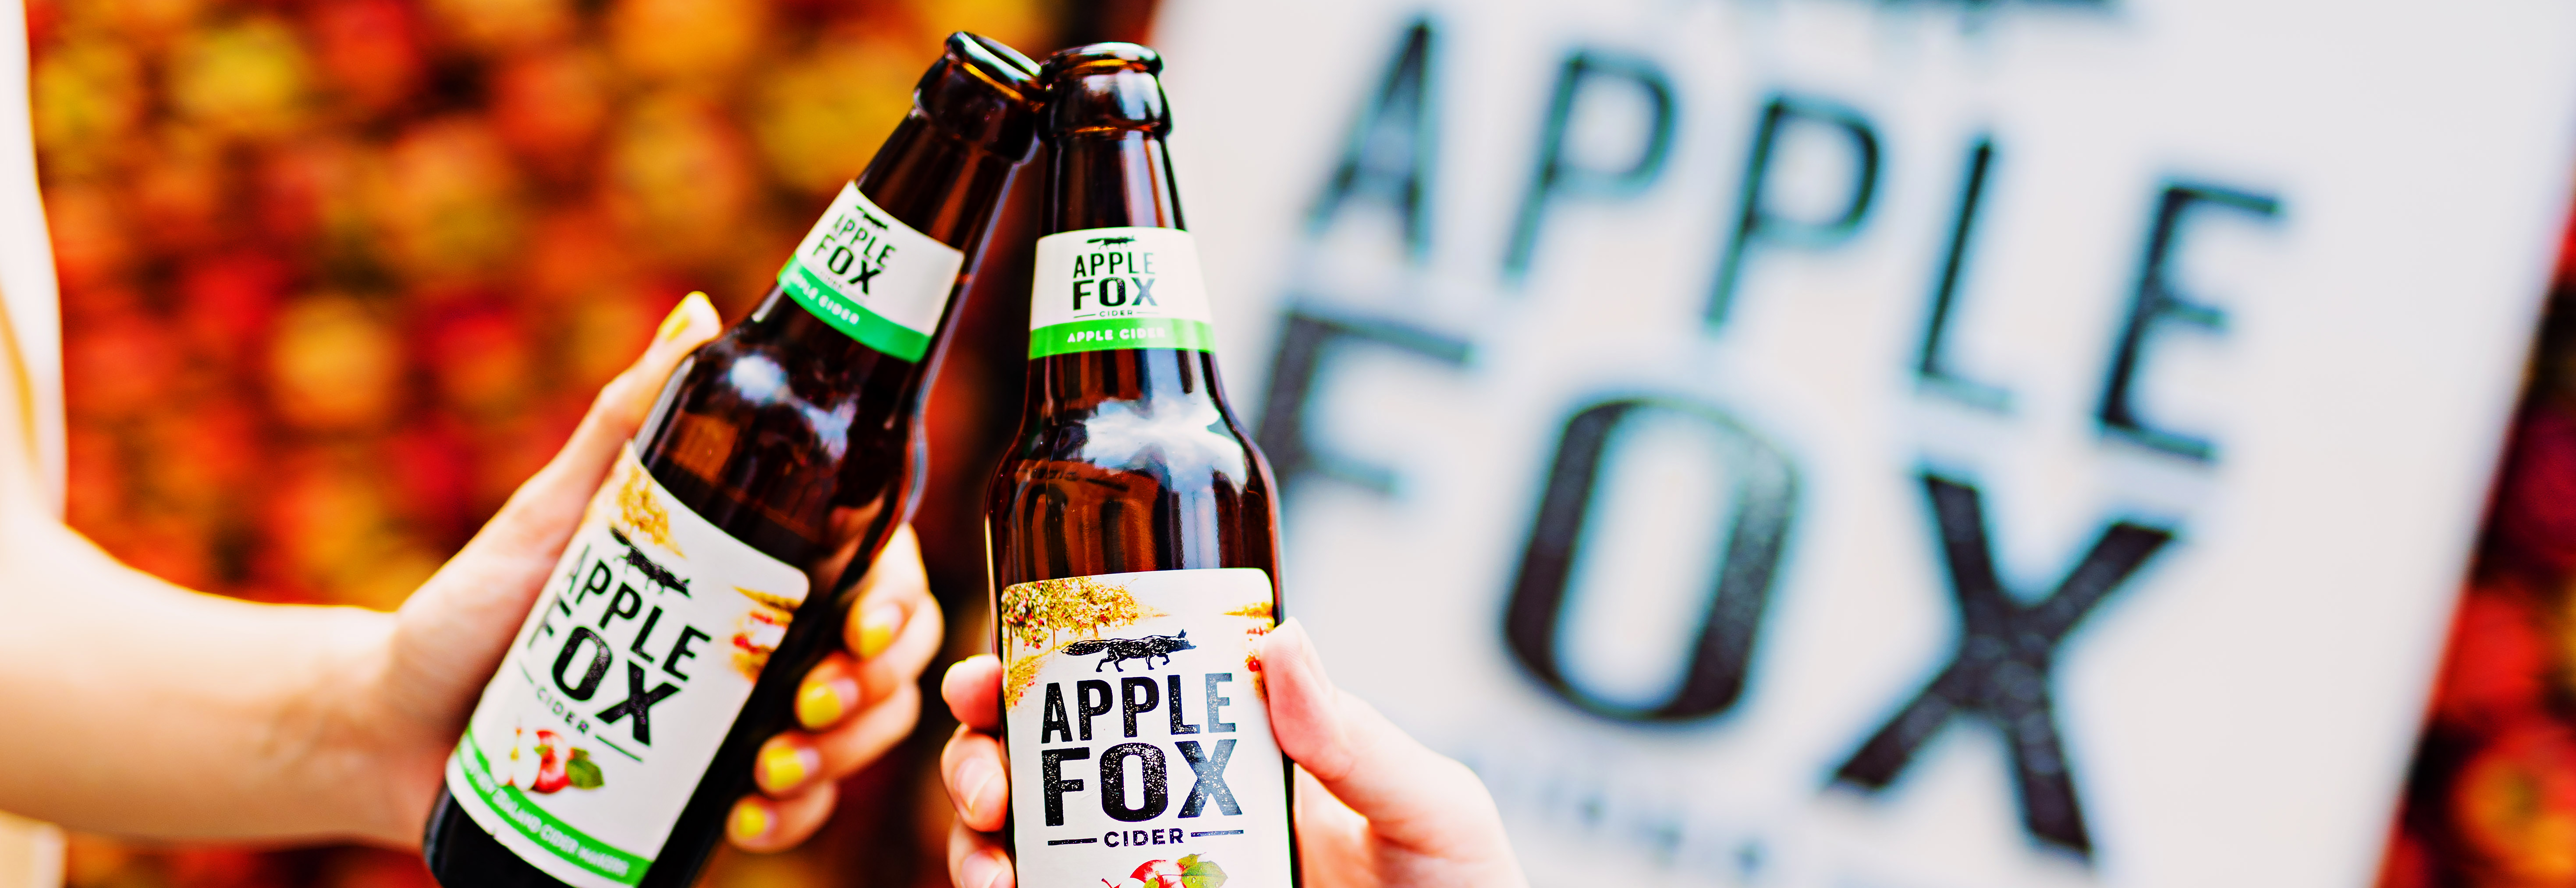 Apple Fox Cider 2-v3